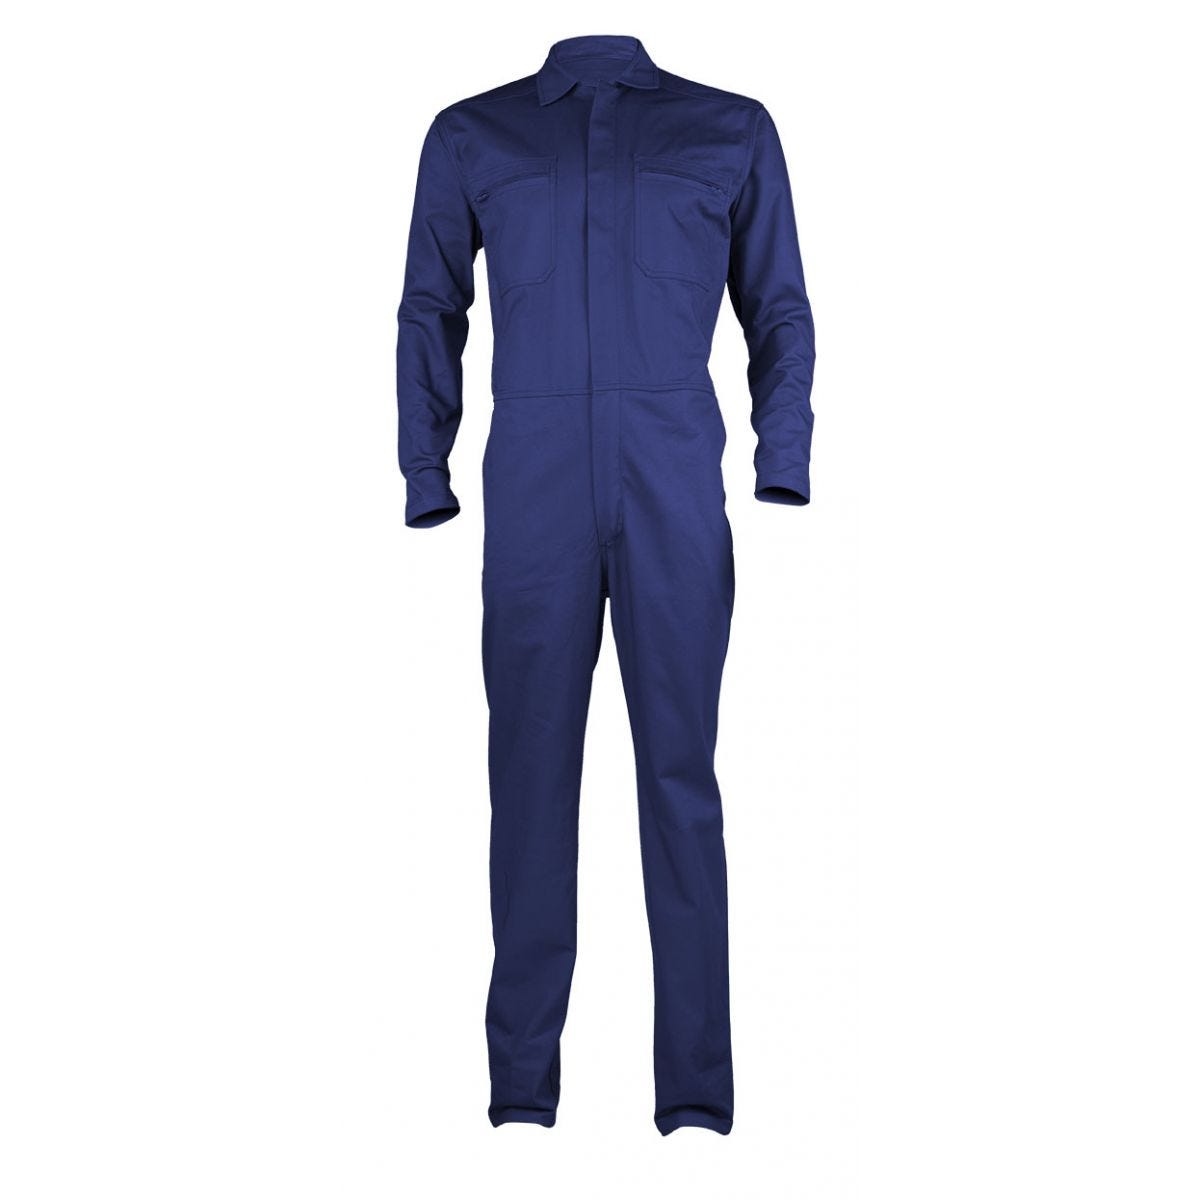 PARTNER Combinaison bleu royal, 100% coton, 280g/m² - COVERGUARD - Taille XL 0